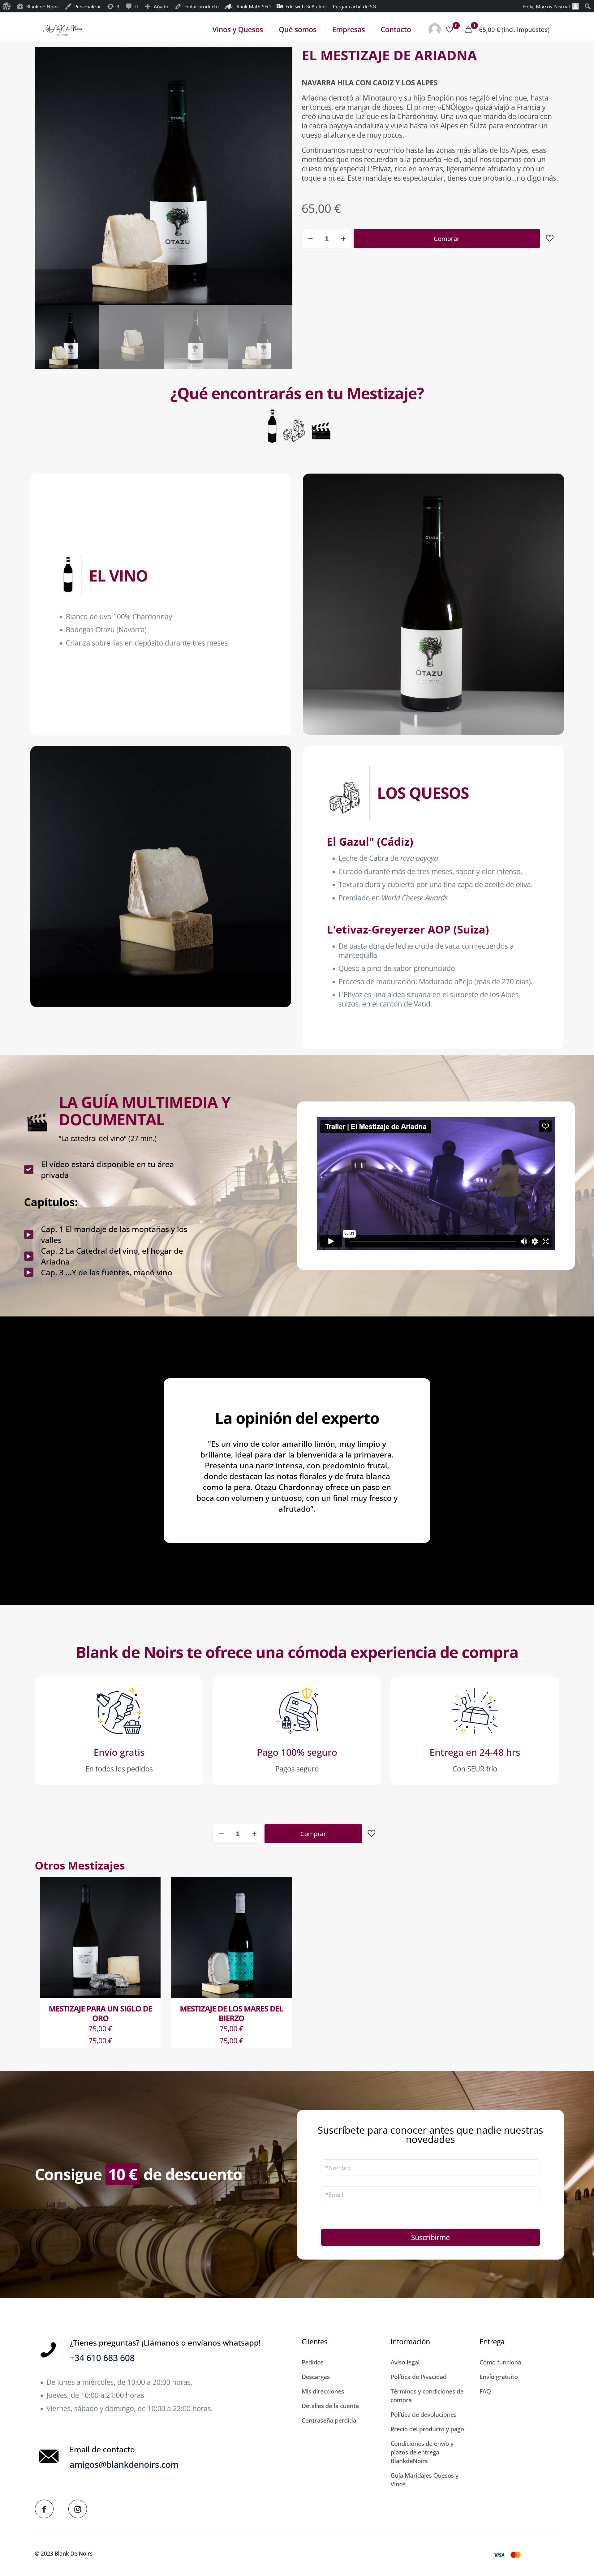 Screenshot 2023-05-08 at 15-54-48 EL MESTIZAJE DE ARIADNA - Blank de Noirs.png